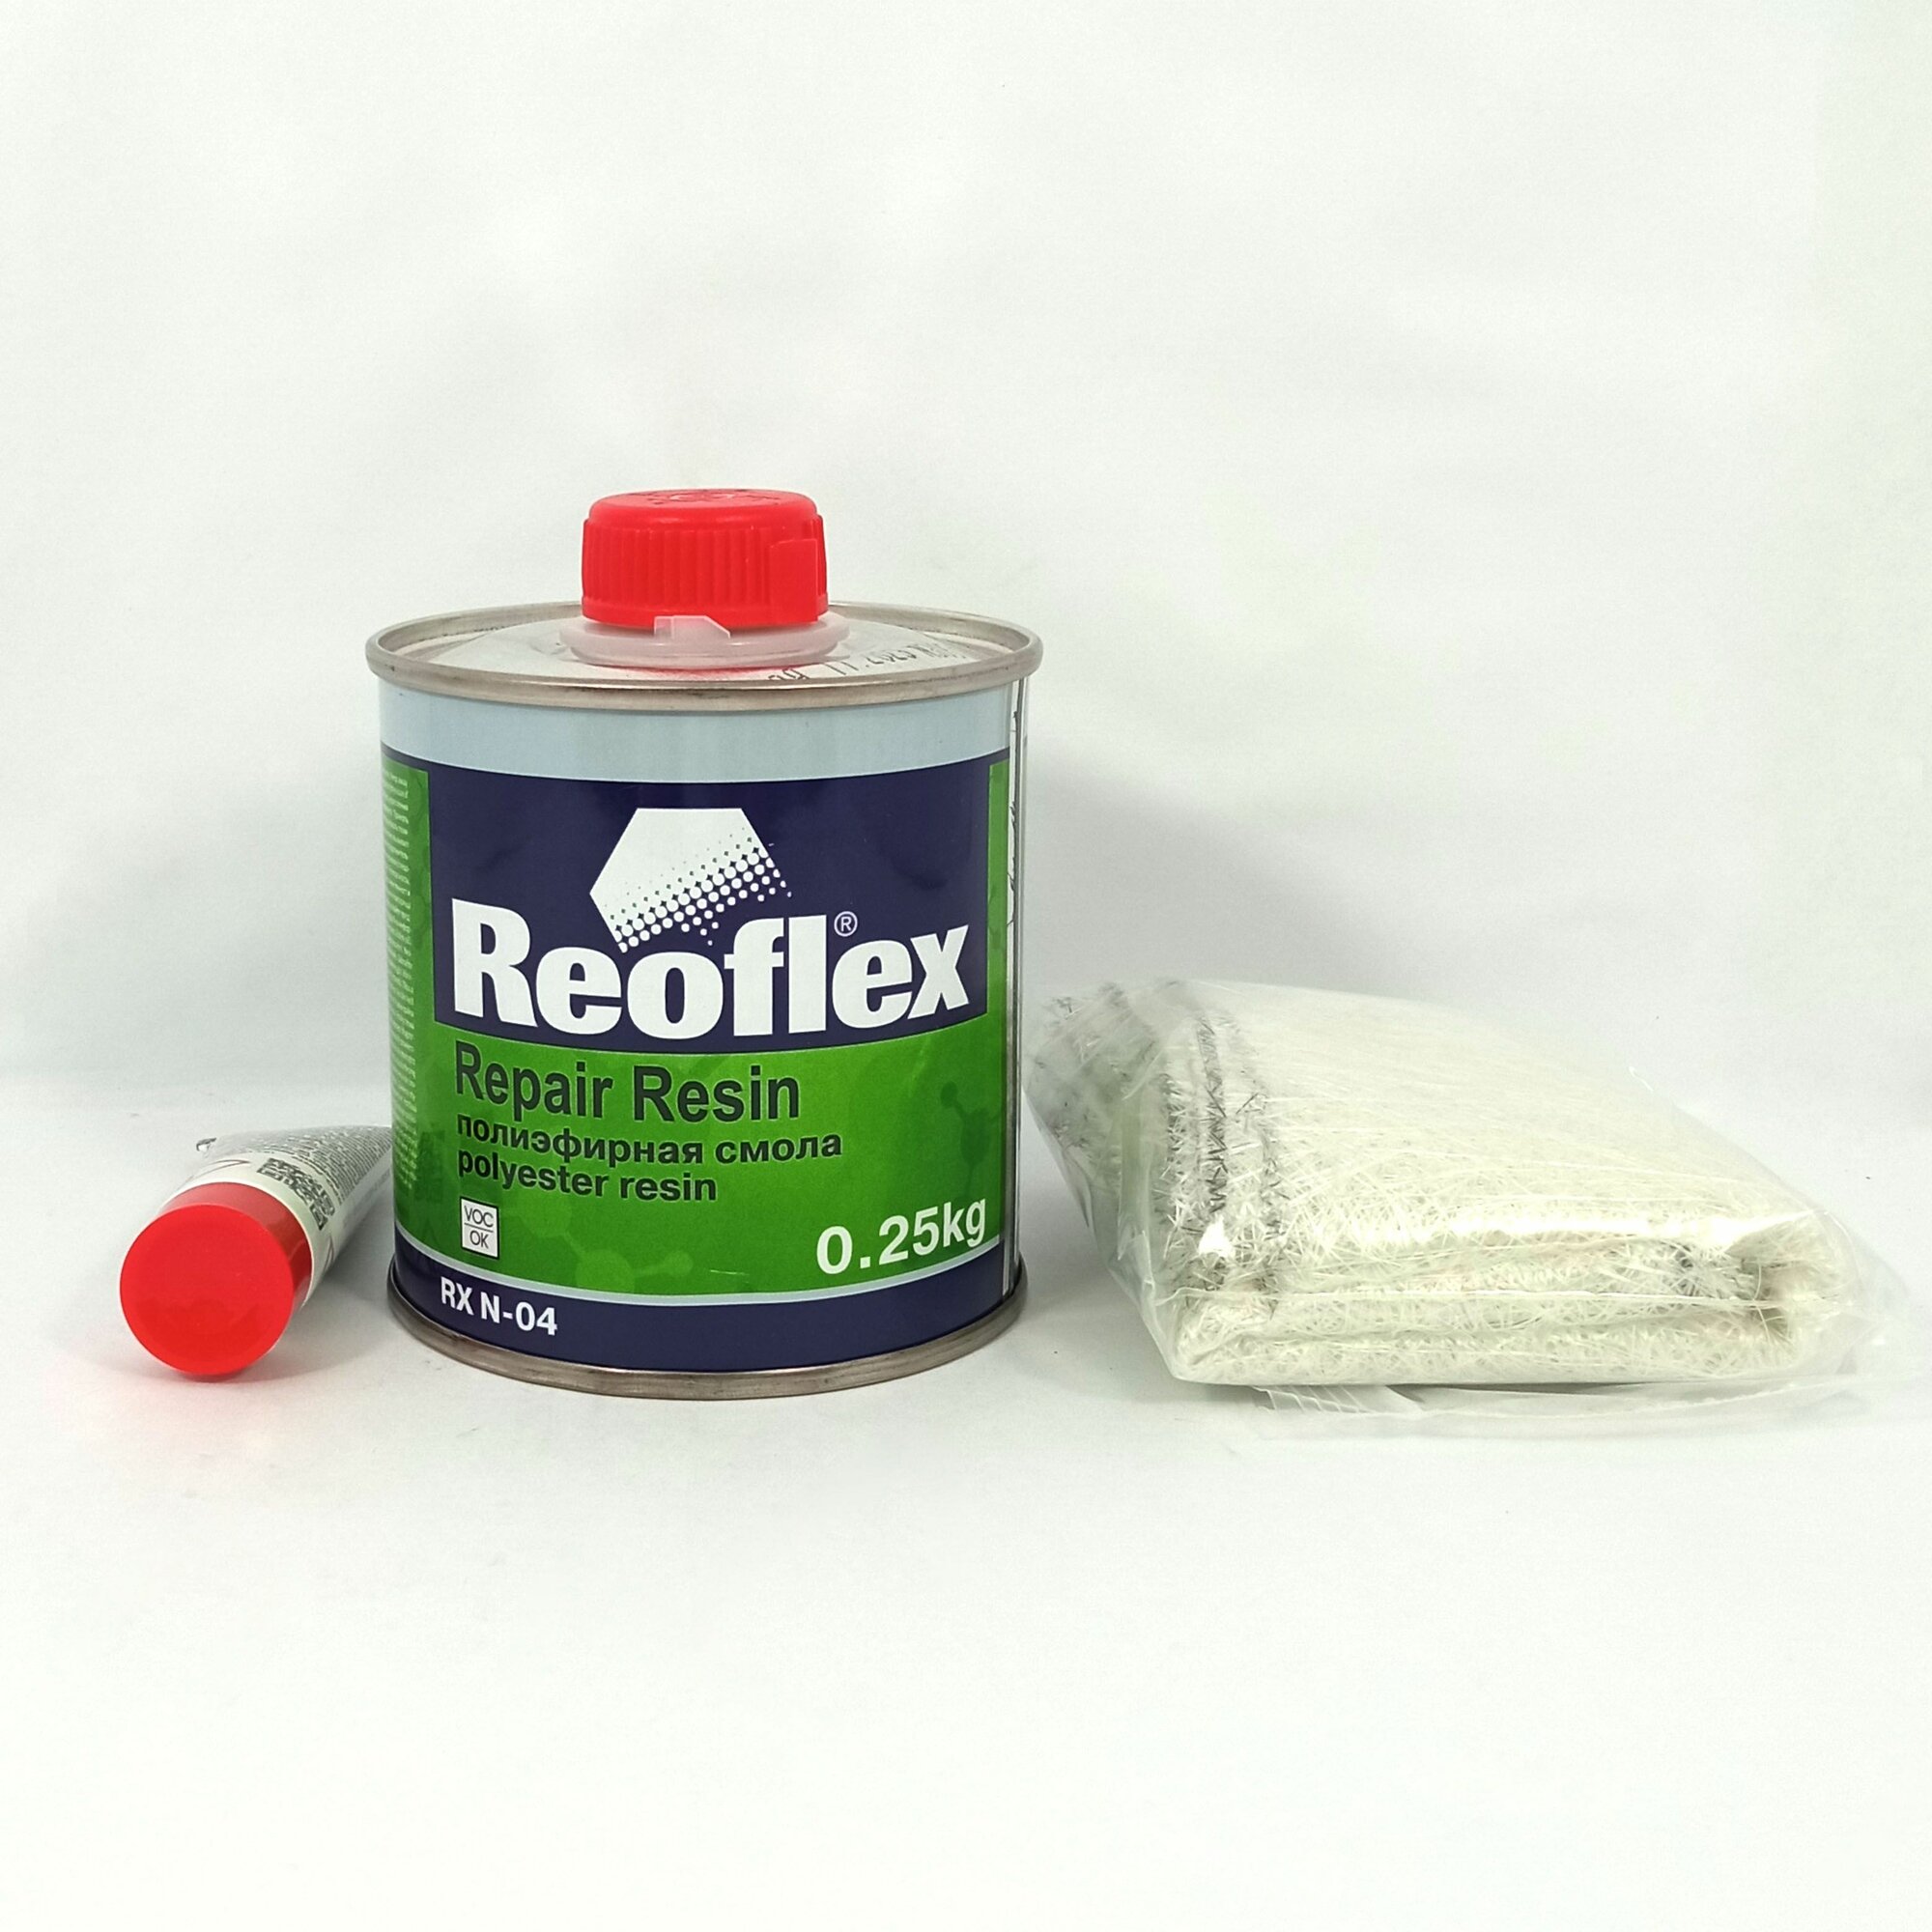 Ремкомплект REOFLEX RX. N-04 на основе полиэфирной смолы (смола 250г + 15г отвердитель, стекломат 0,25м2)